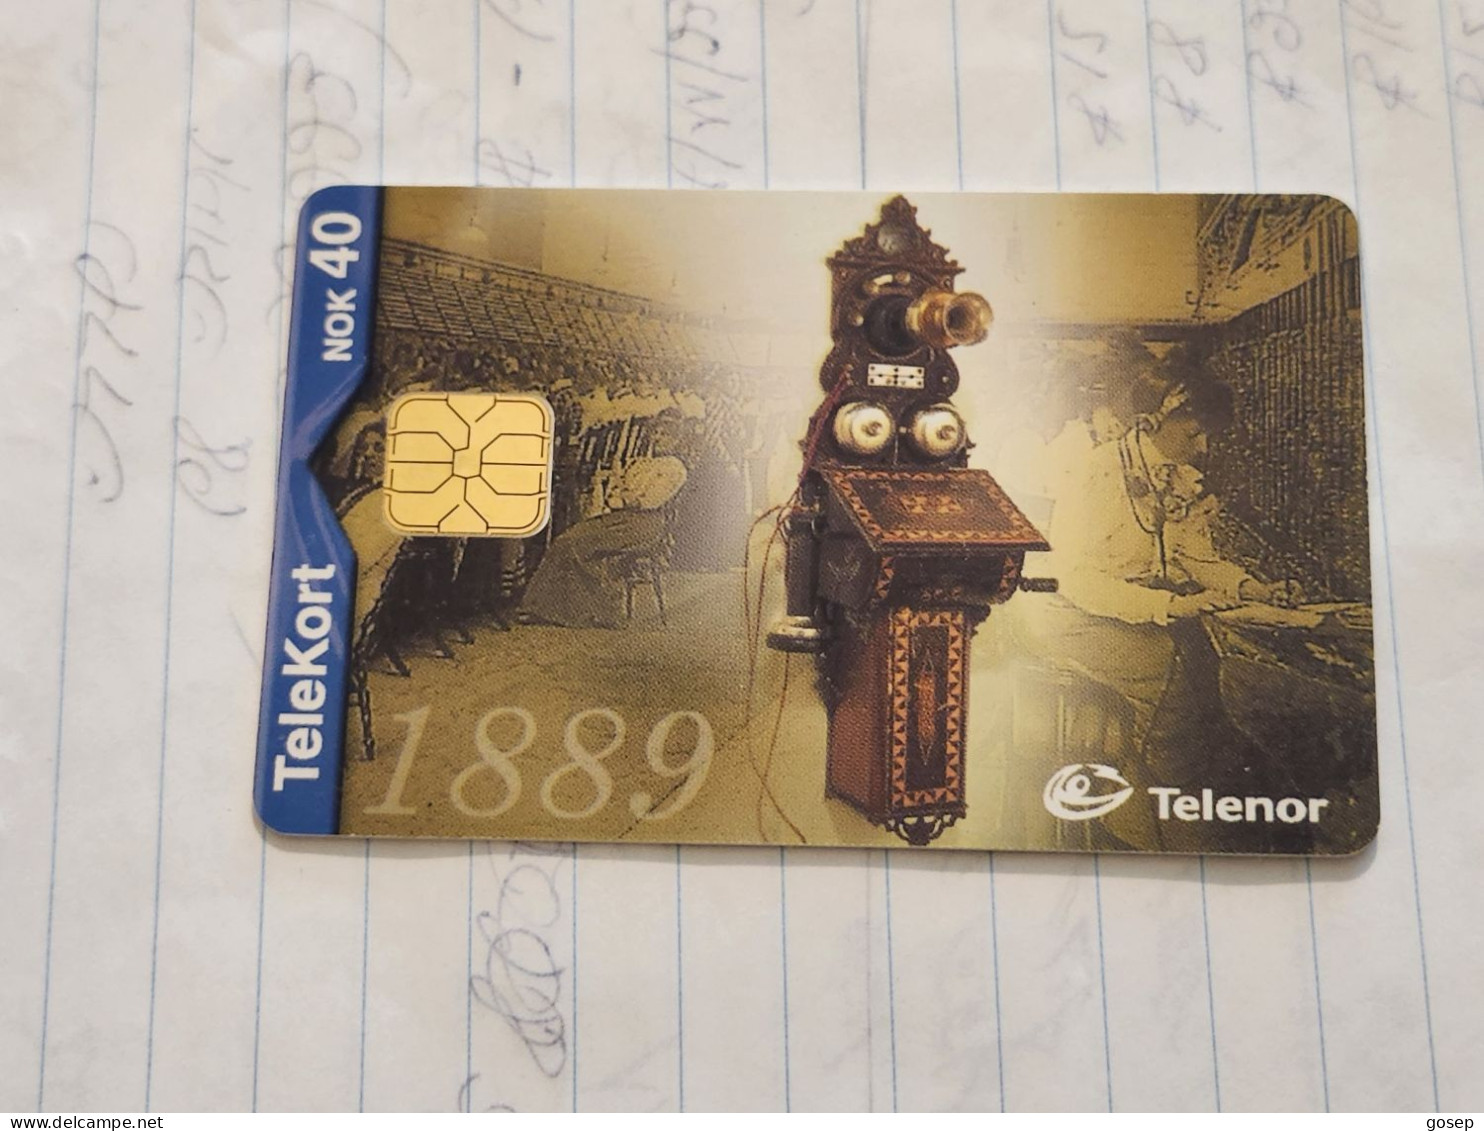 Norway-(N-166)-Telefon 1889-(KR 40)-(75)-(1.02.2000)-used Card+1card Prepiad Free - Noorwegen